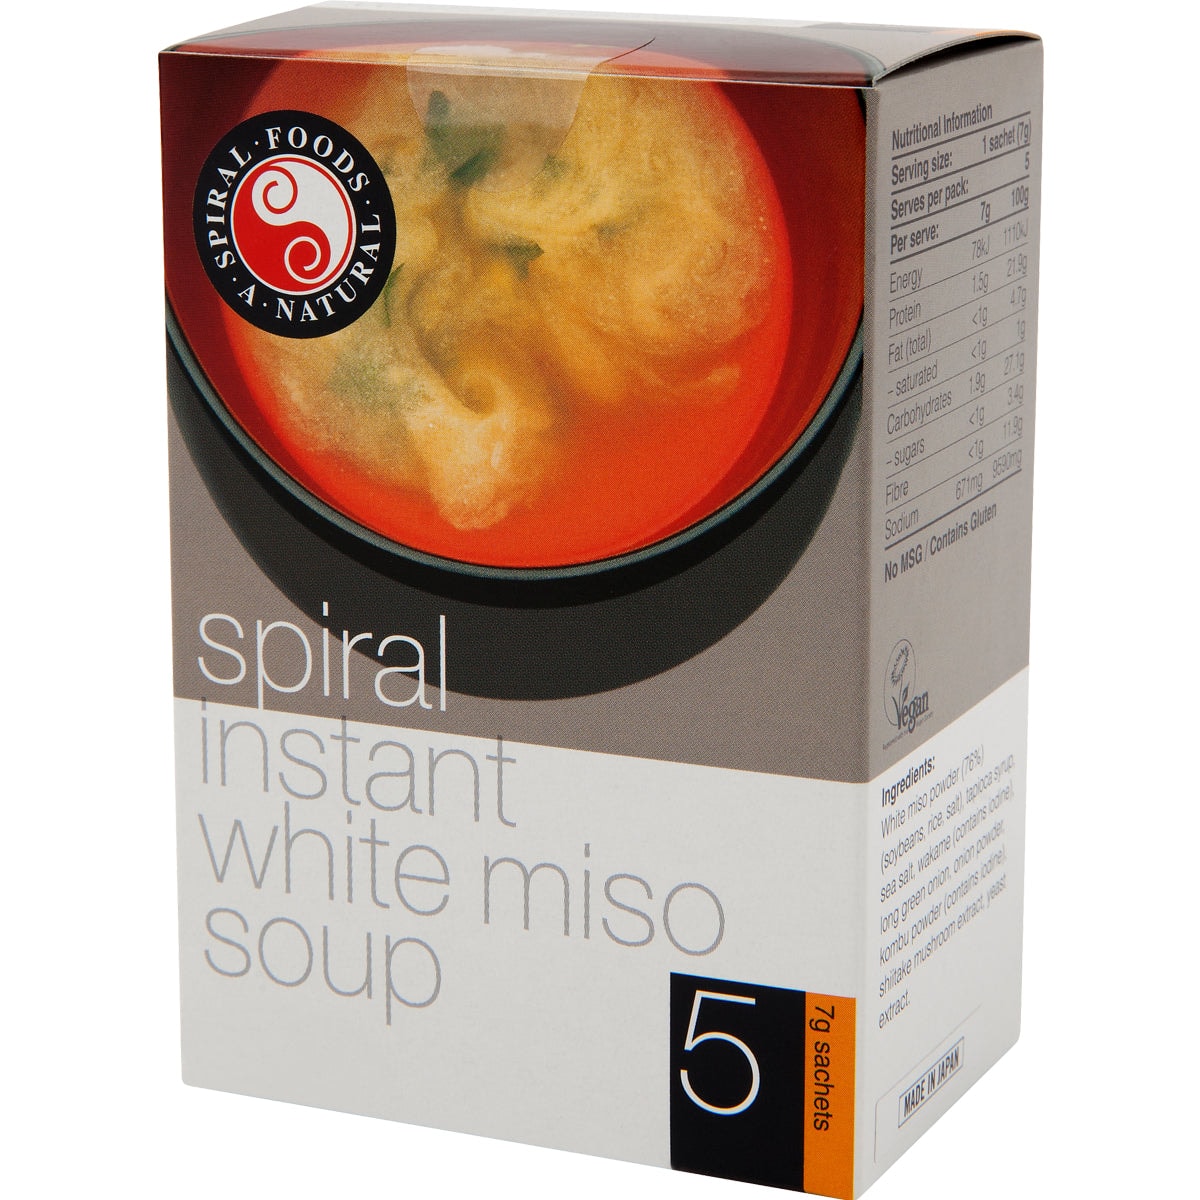 Spiral Instant White Miso 5 x 7g